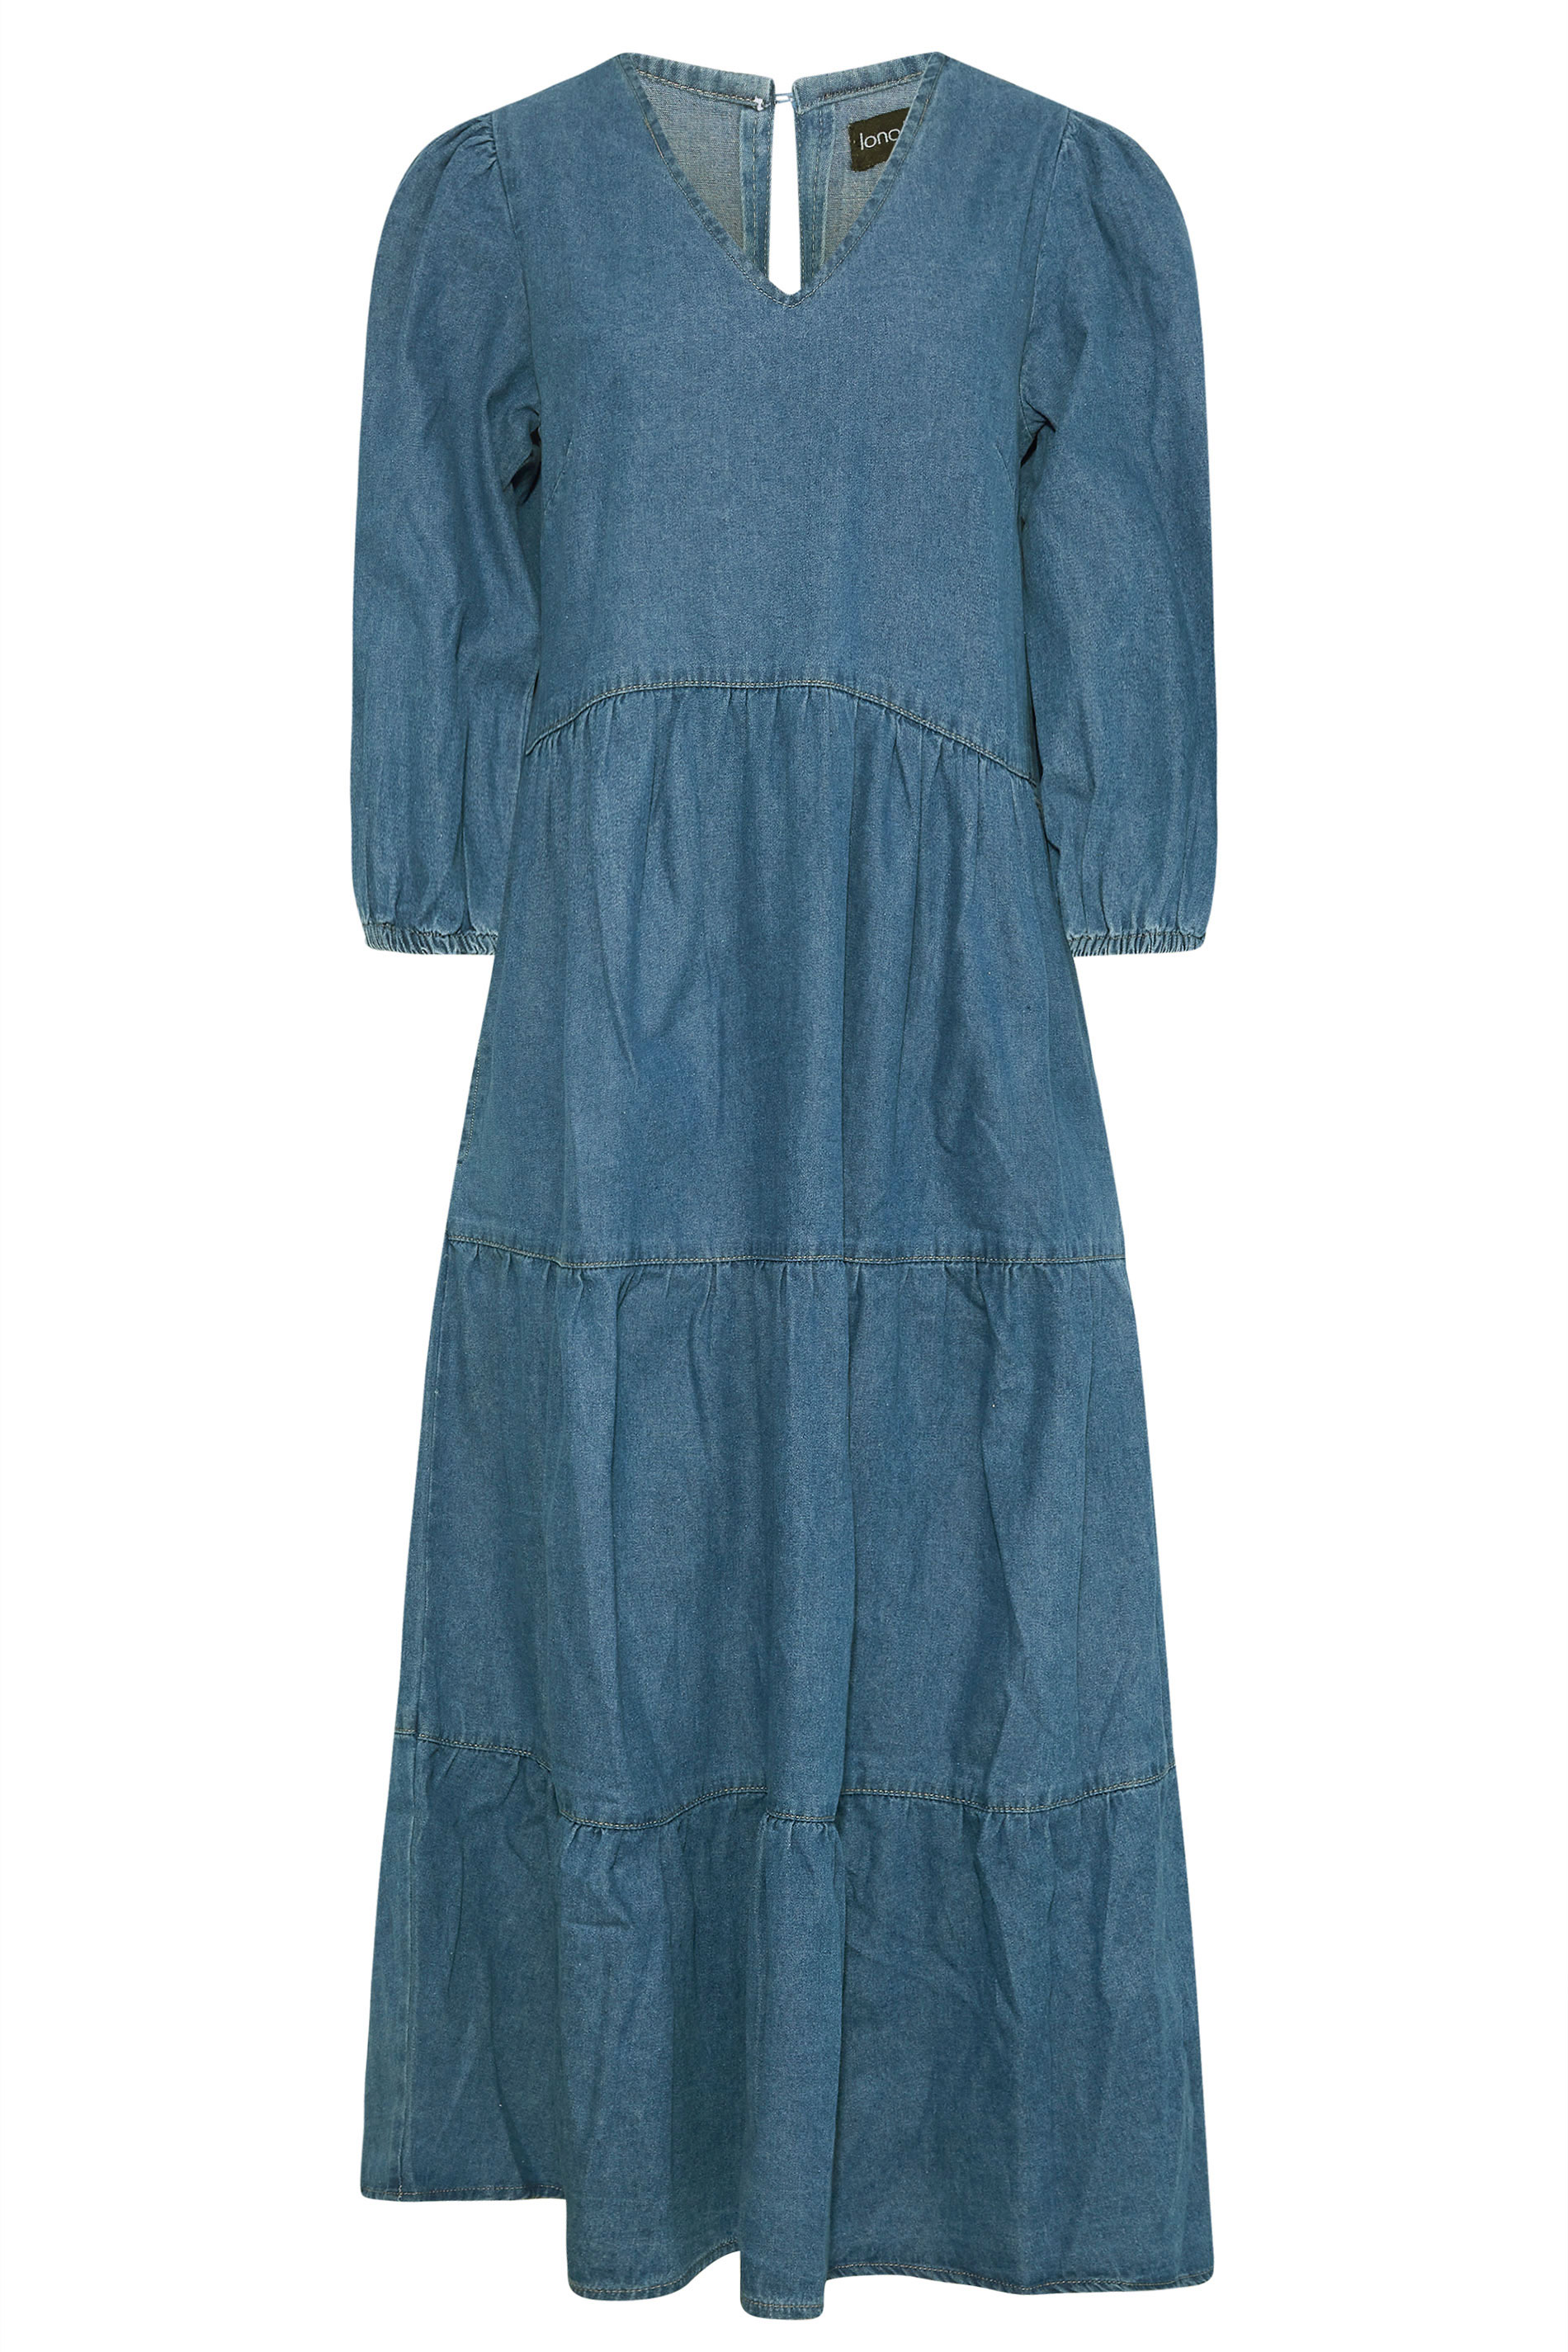 Tall Women's Blue Tiered Denim Midi Dress | Long Tall Sally